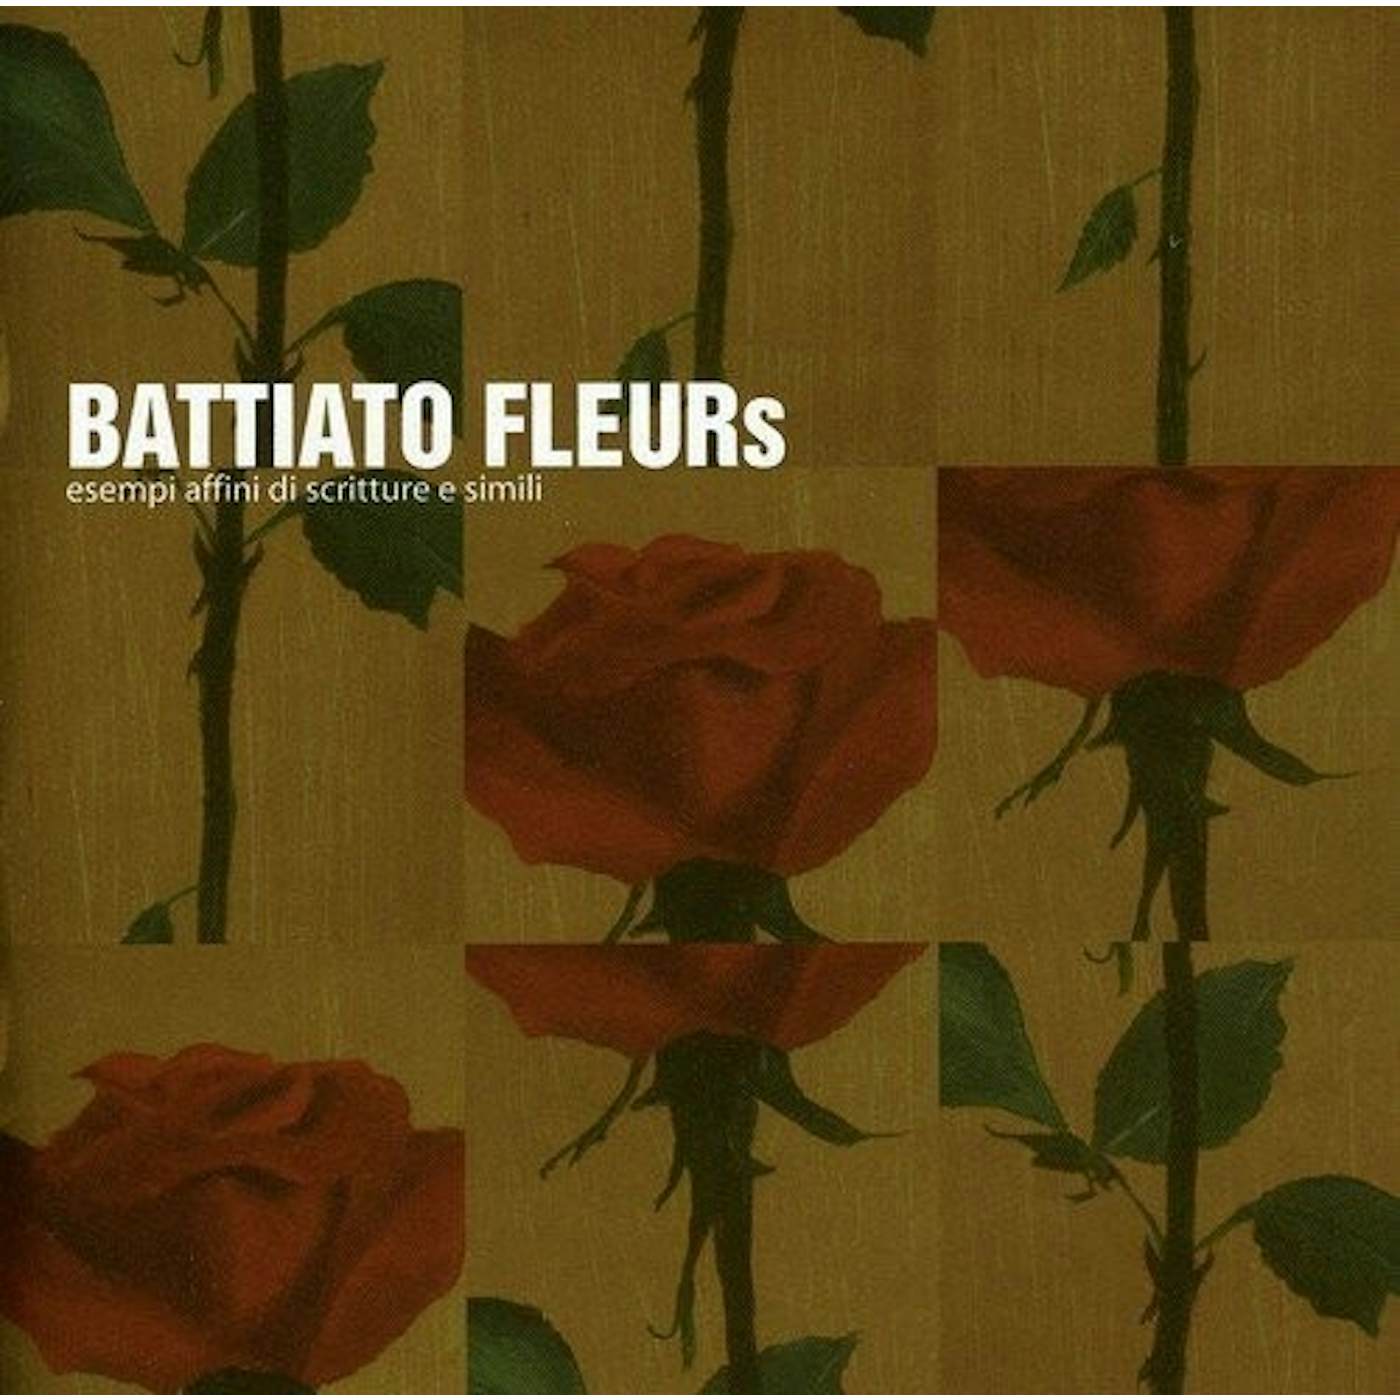 Franco Battiato Fleurs Vinyl Record